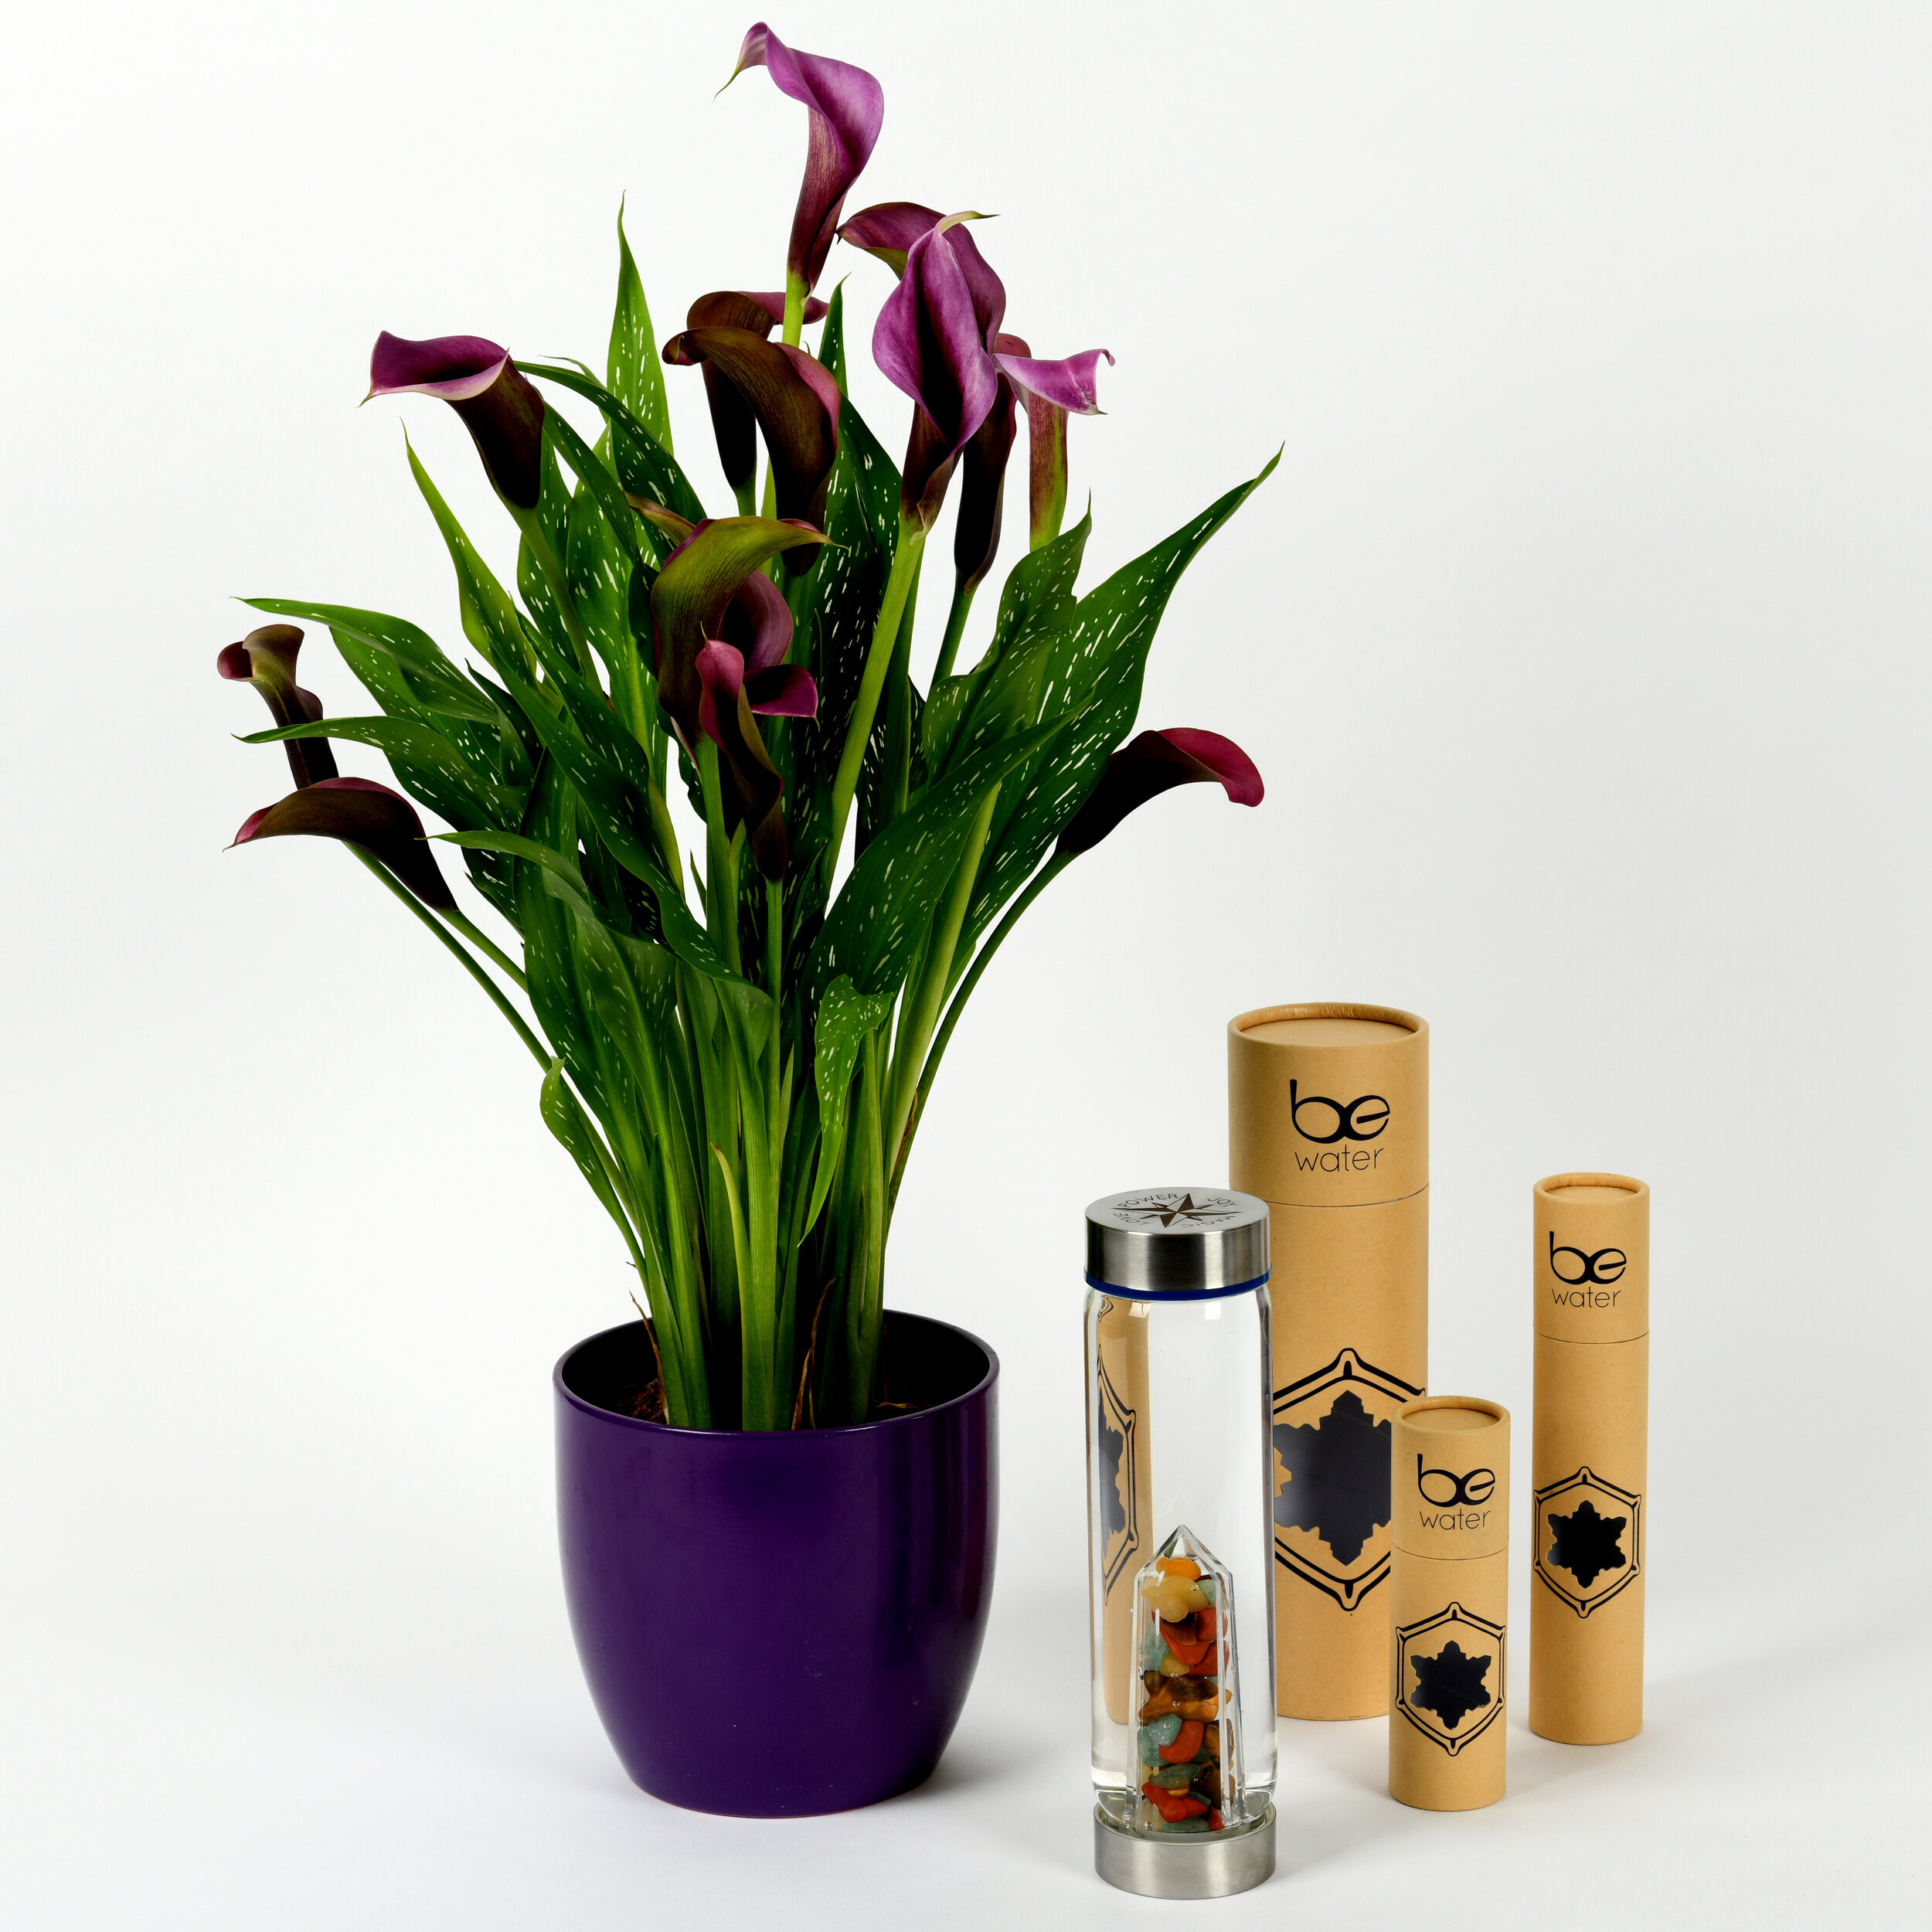 lilies & bewater packaging.jpg